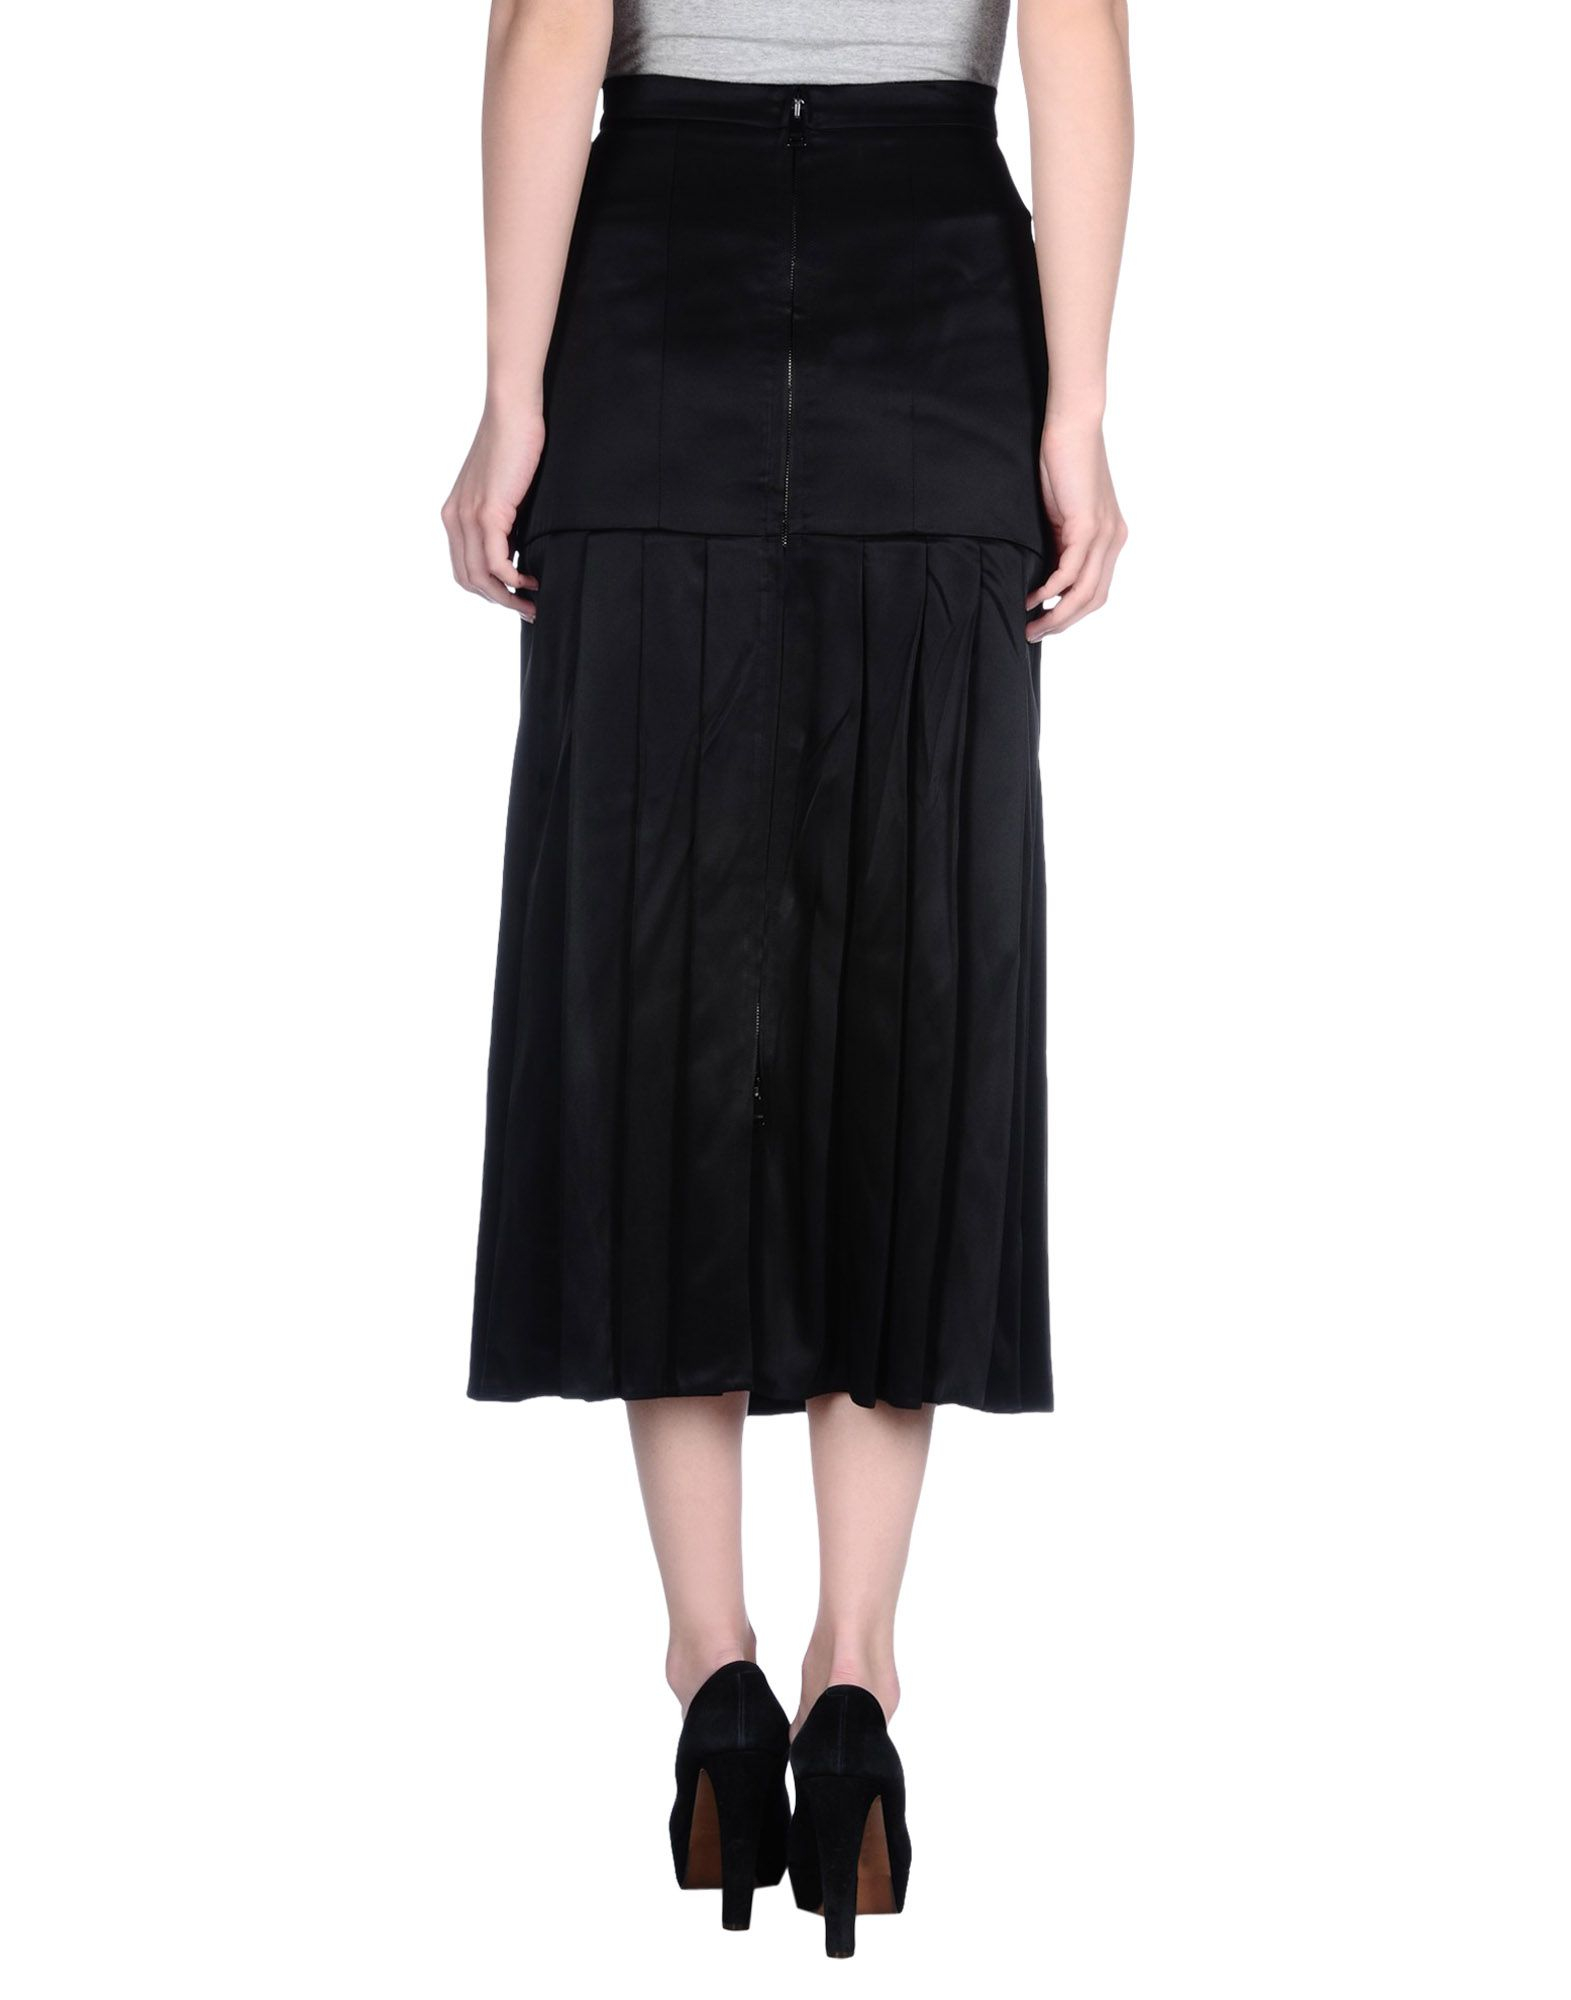 Lyst - Fendi Long Skirt in Black